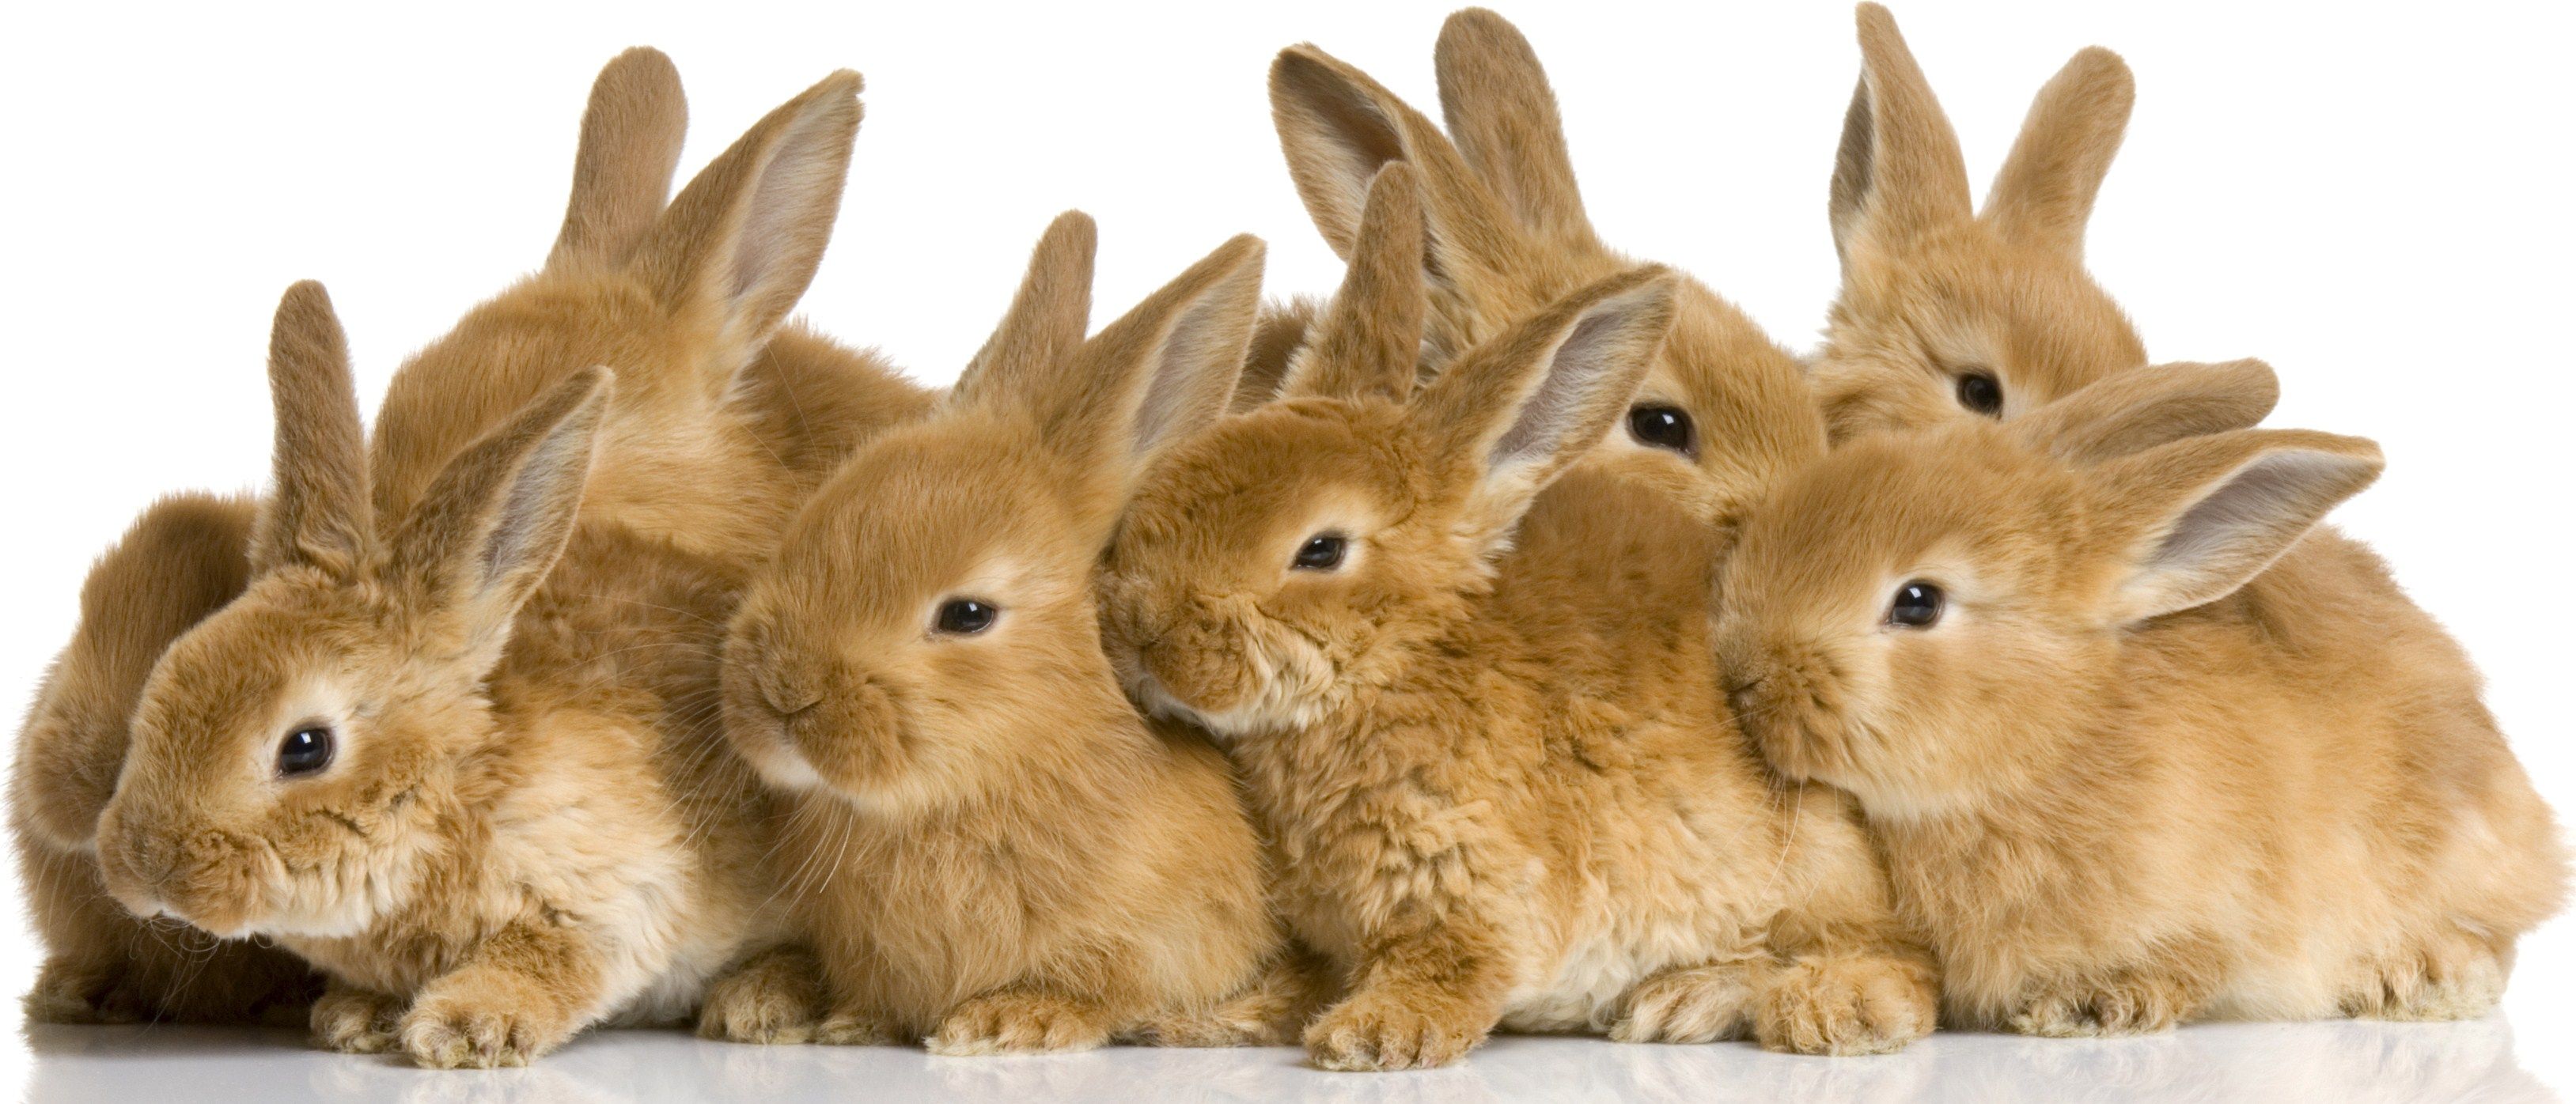 Cute rabbits HD Wallpaper